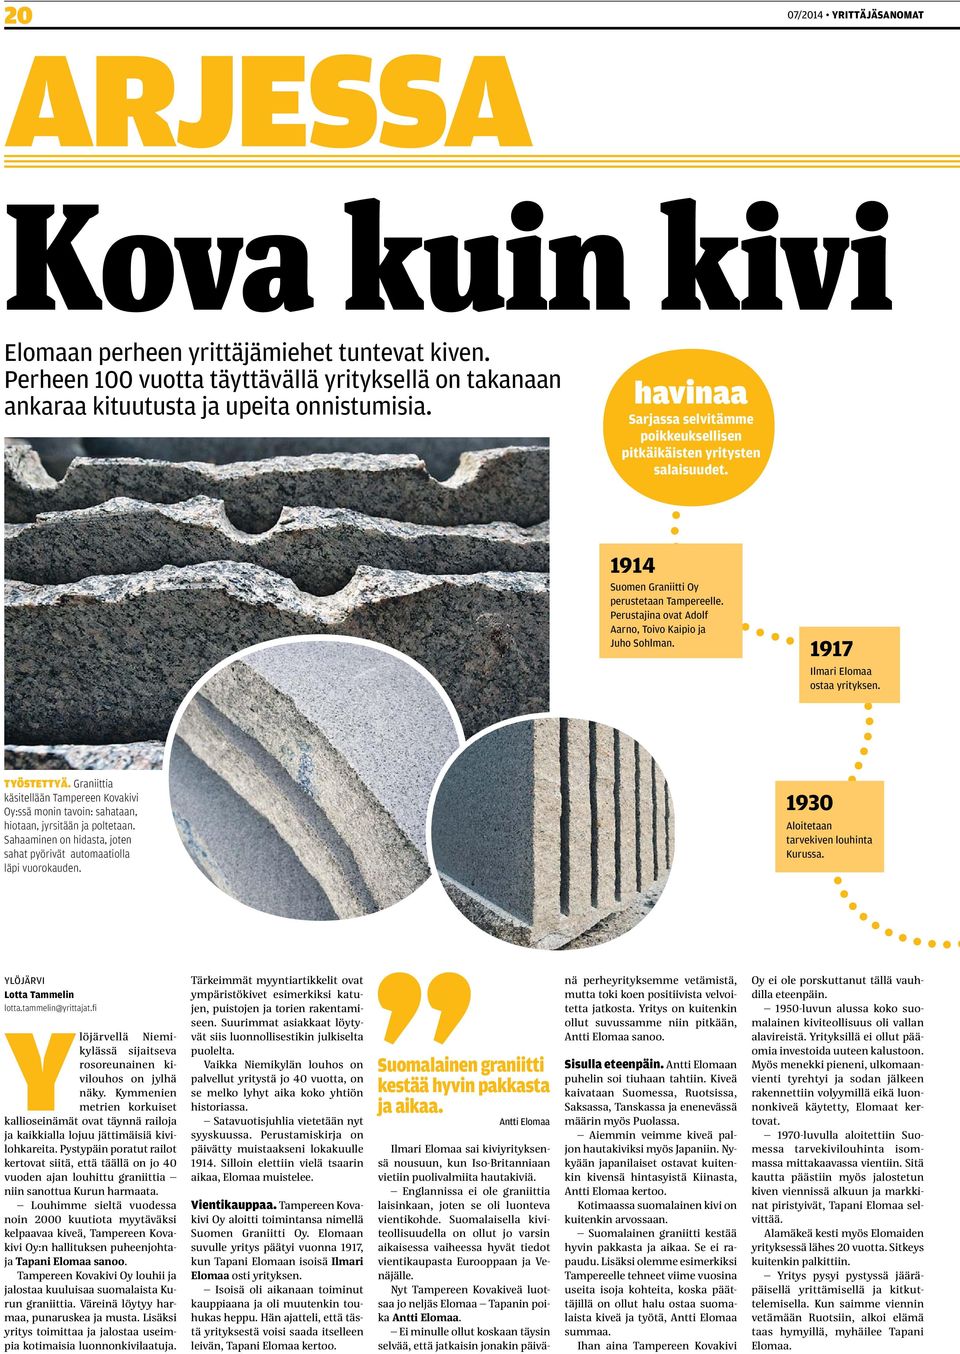 1917 Ilmari Elomaa ostaa yrityksen. Työstettyä. Graniittia käsitellään Tampereen Kovakivi Oy:ssä monin tavoin: sahataan, hiotaan, jyrsitään ja poltetaan.